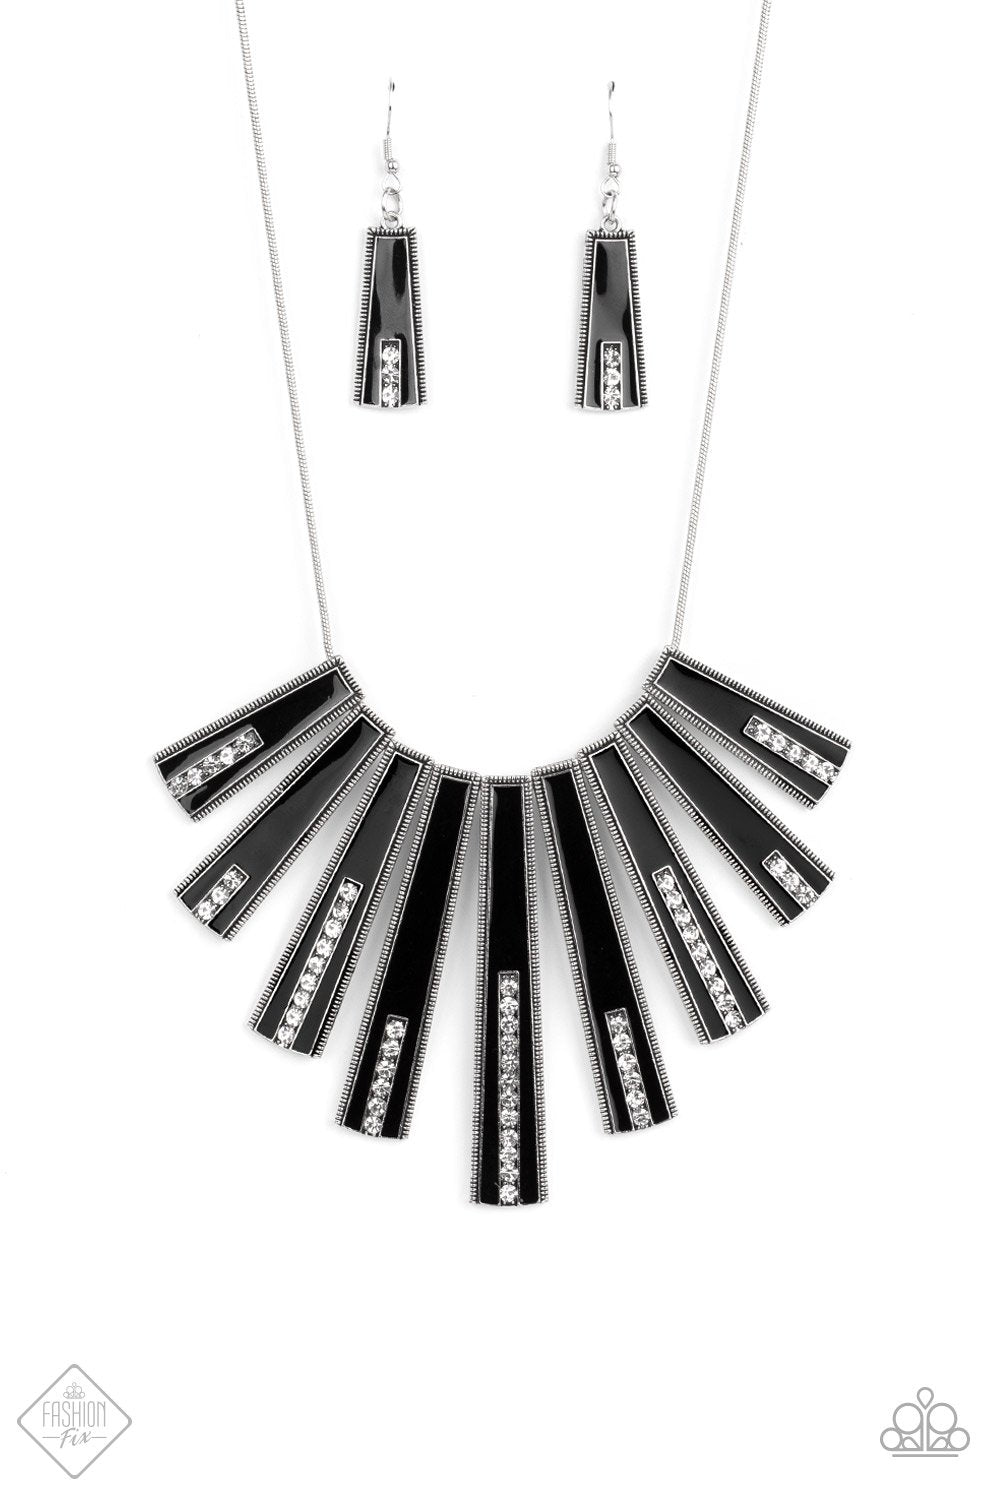 Fan-tastically Deco Black Necklace (FFA-0921) freeshipping - JewLz4u Gemstone Gallery